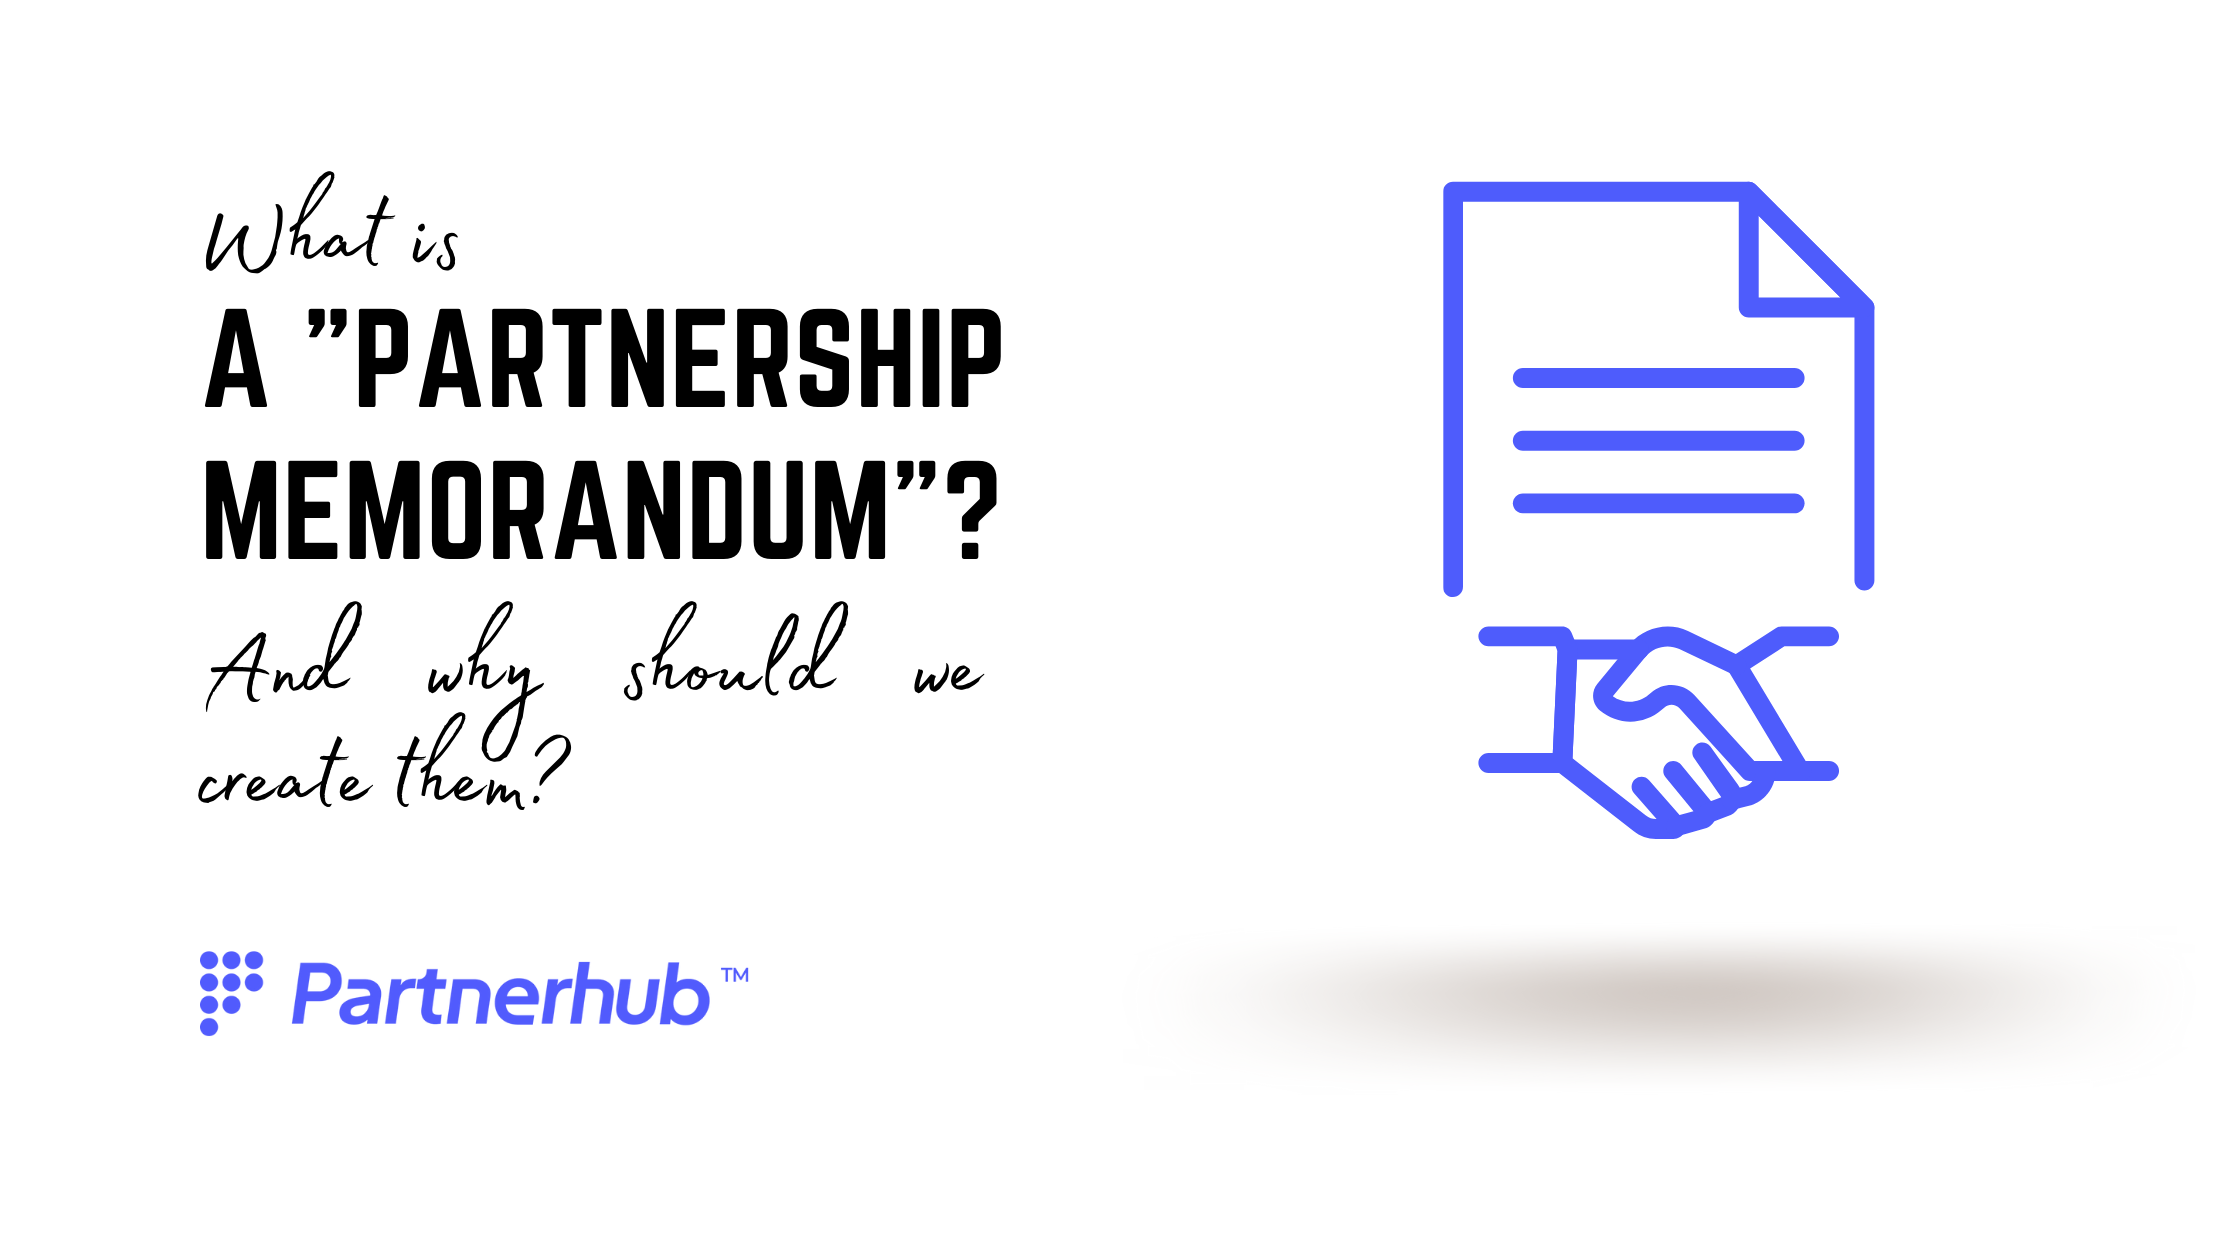 The Partnership Memorandum